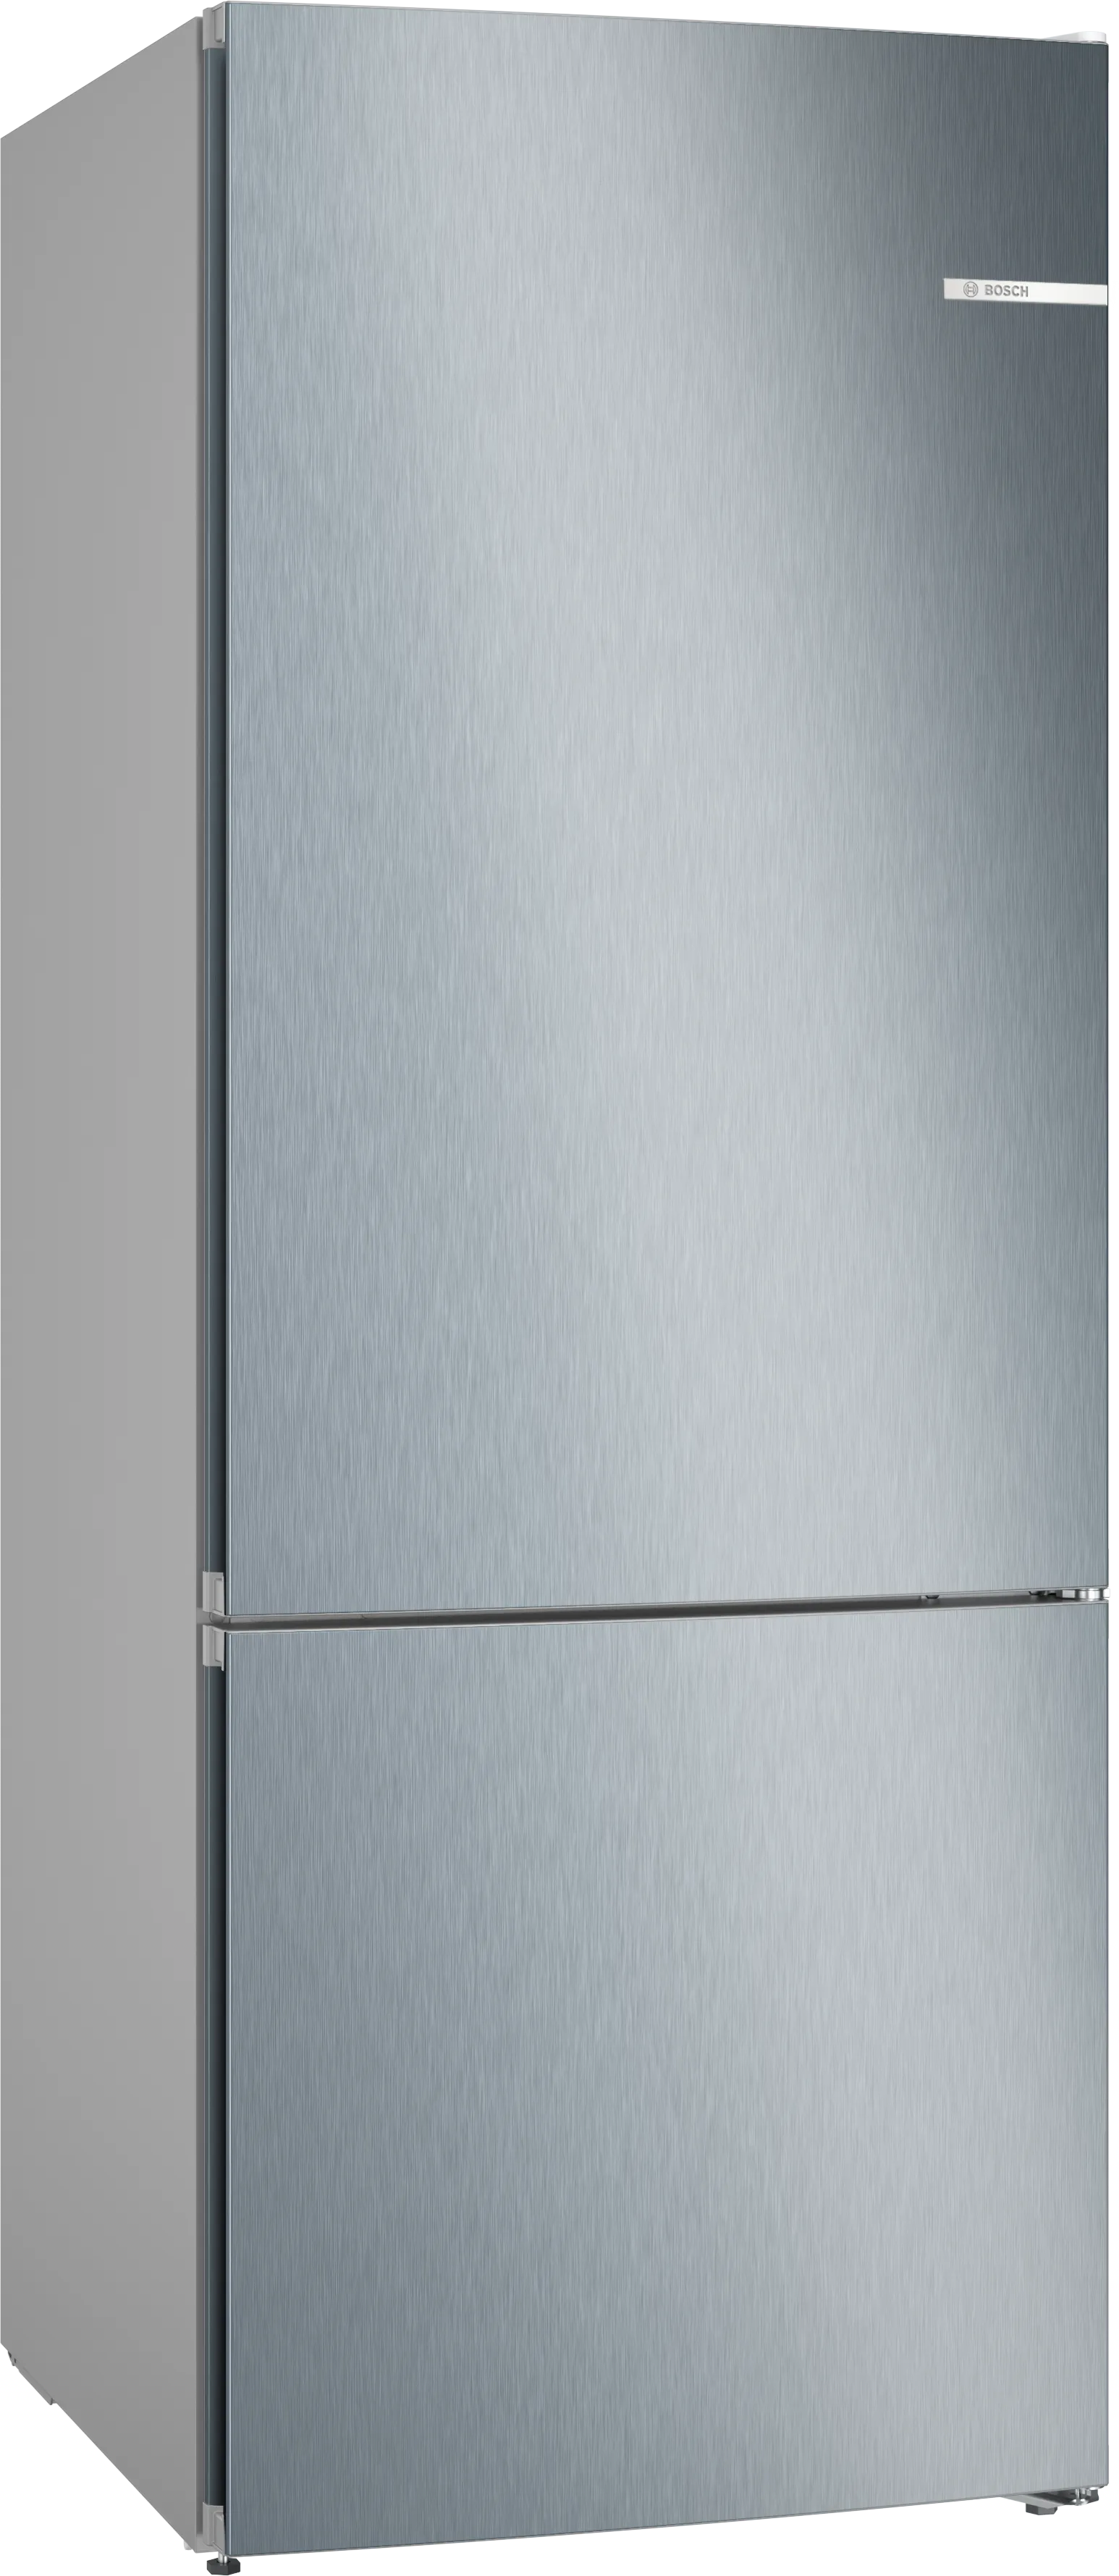 Серия 4 Отдельностоящий холодильник с нижней морозильной камерой 186 x 70 cm Под нержавеющую сталь 